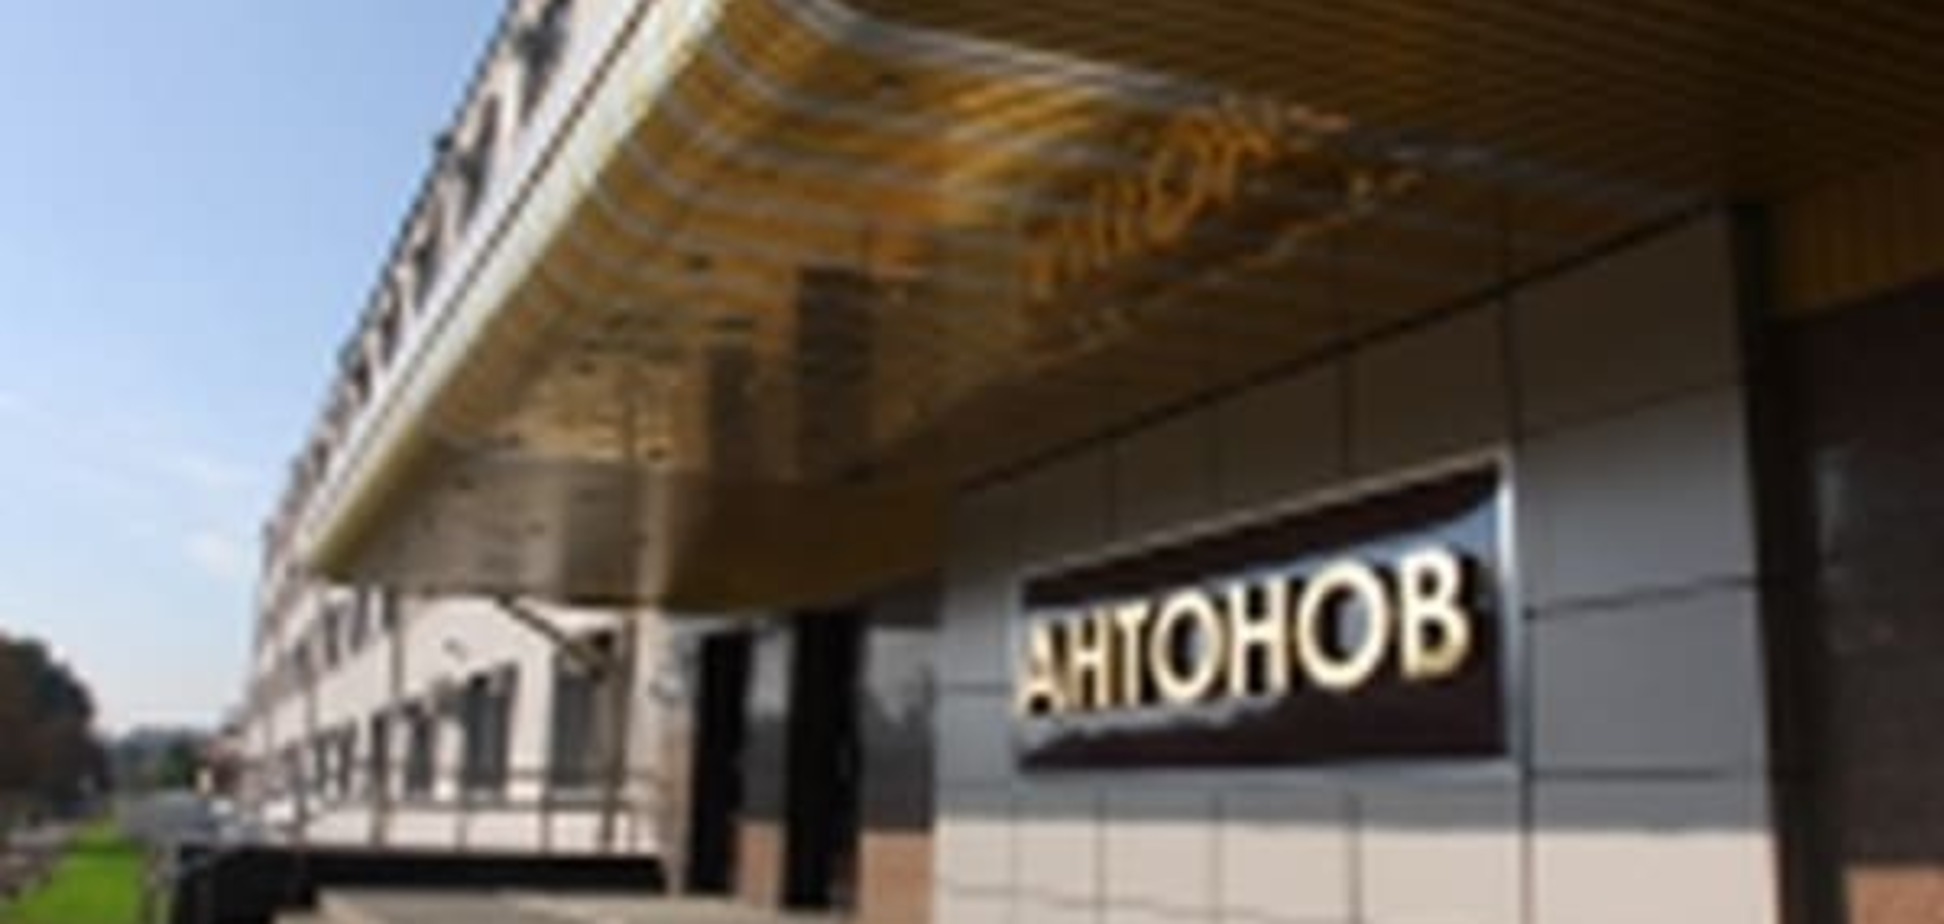 ГП 'Антонов' потребовал от россиян заплатить $5,3 млн